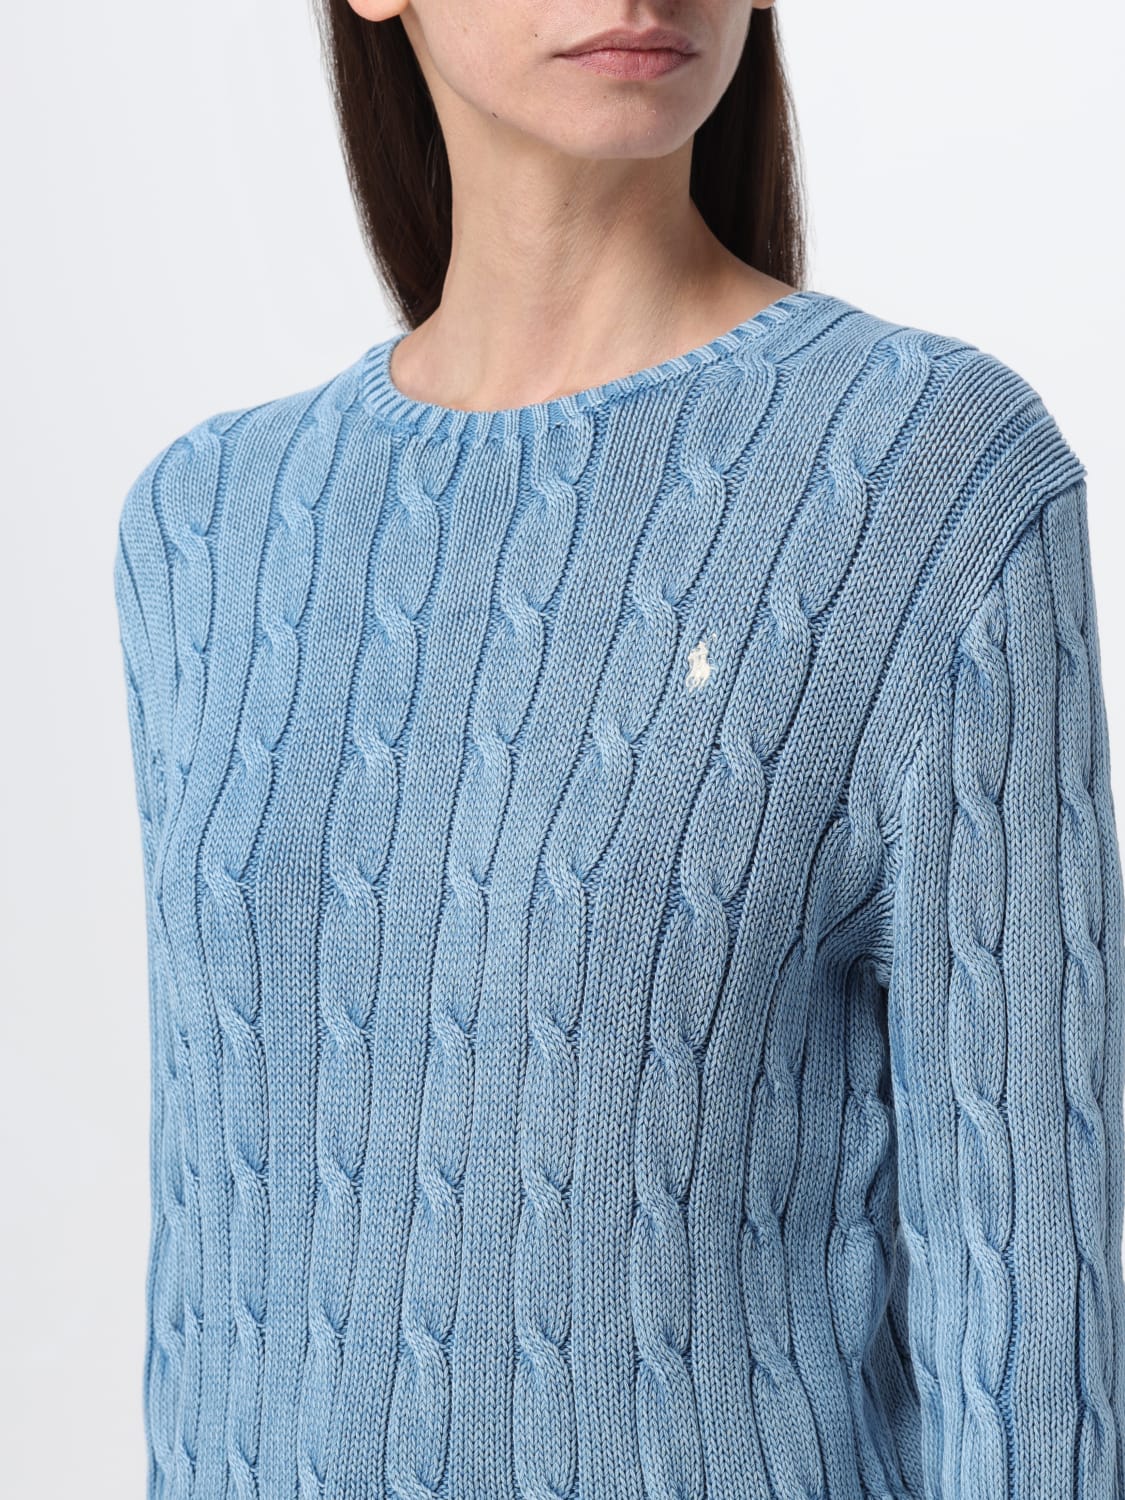 POLO RALPH LAUREN: Sweater woman - Blue  POLO RALPH LAUREN sweater  211924451001 online at